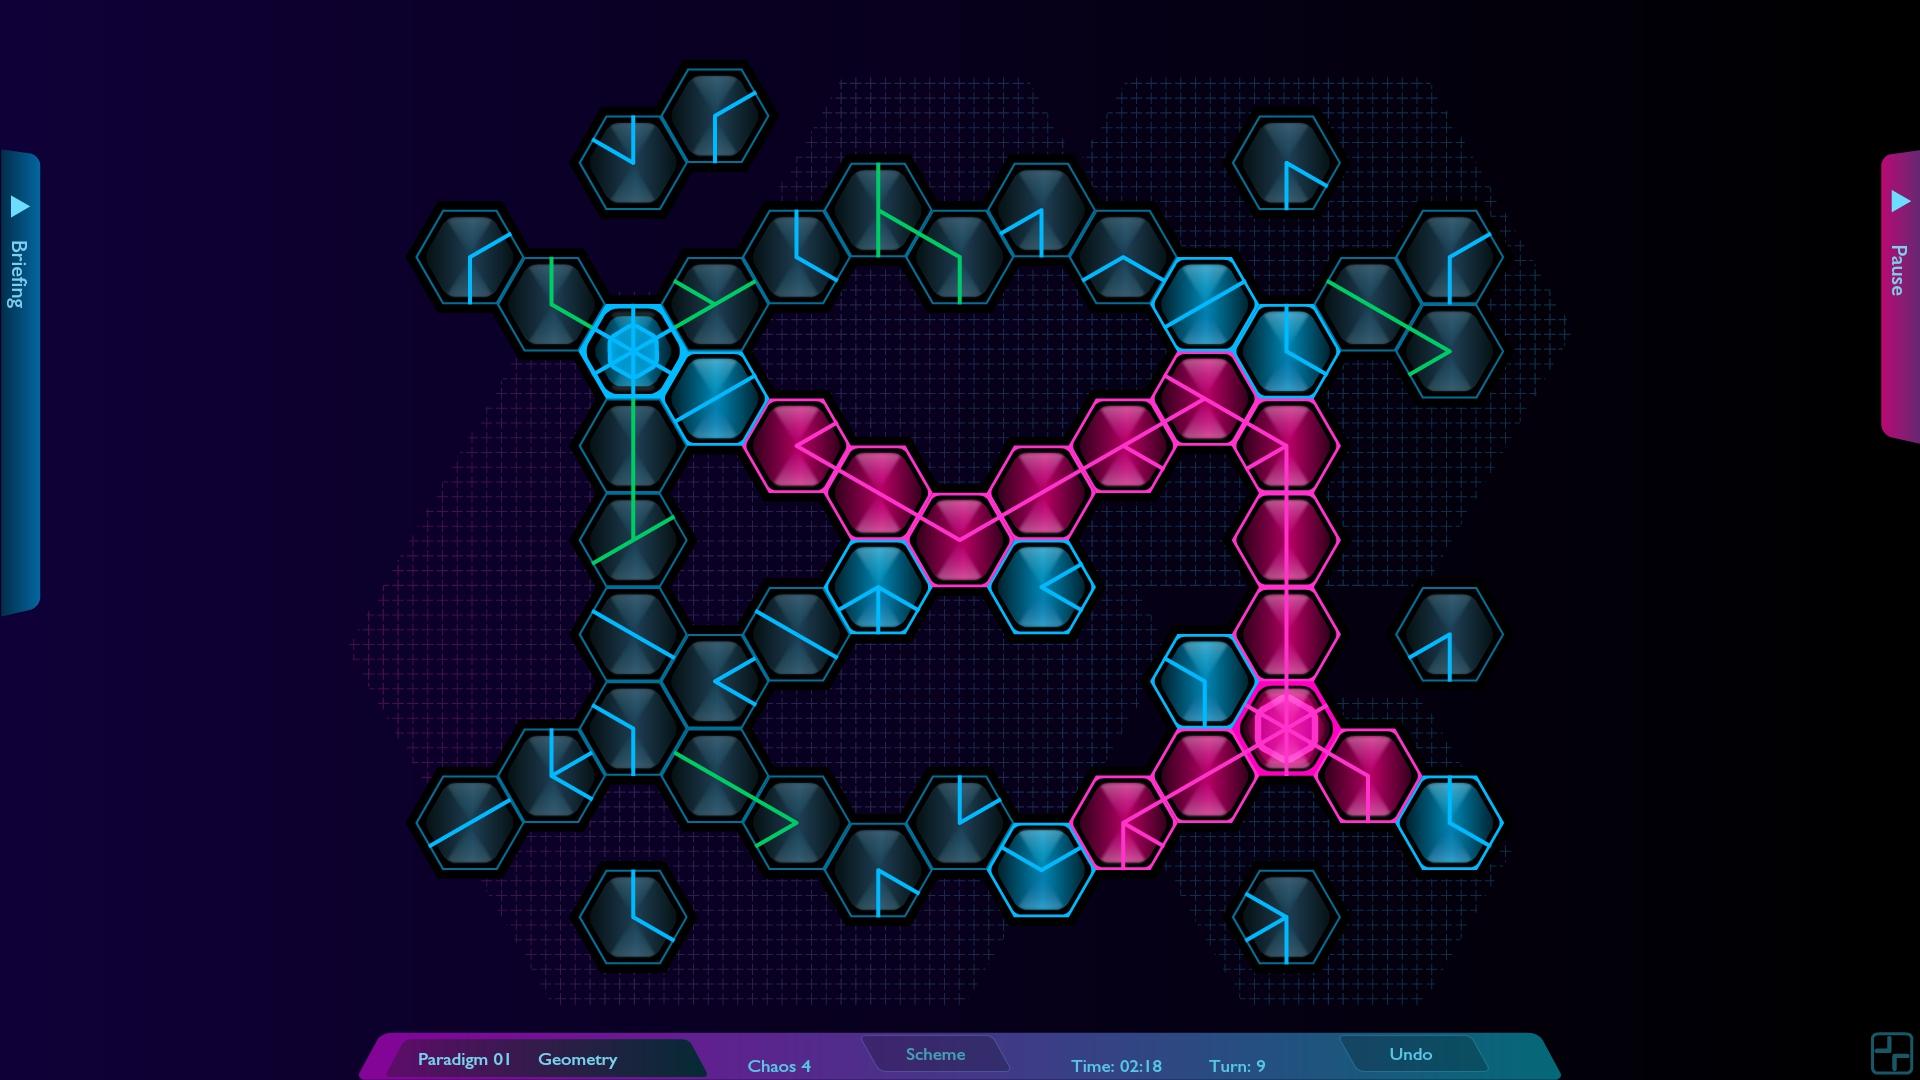 Screenshot №4 from game Hexoscope